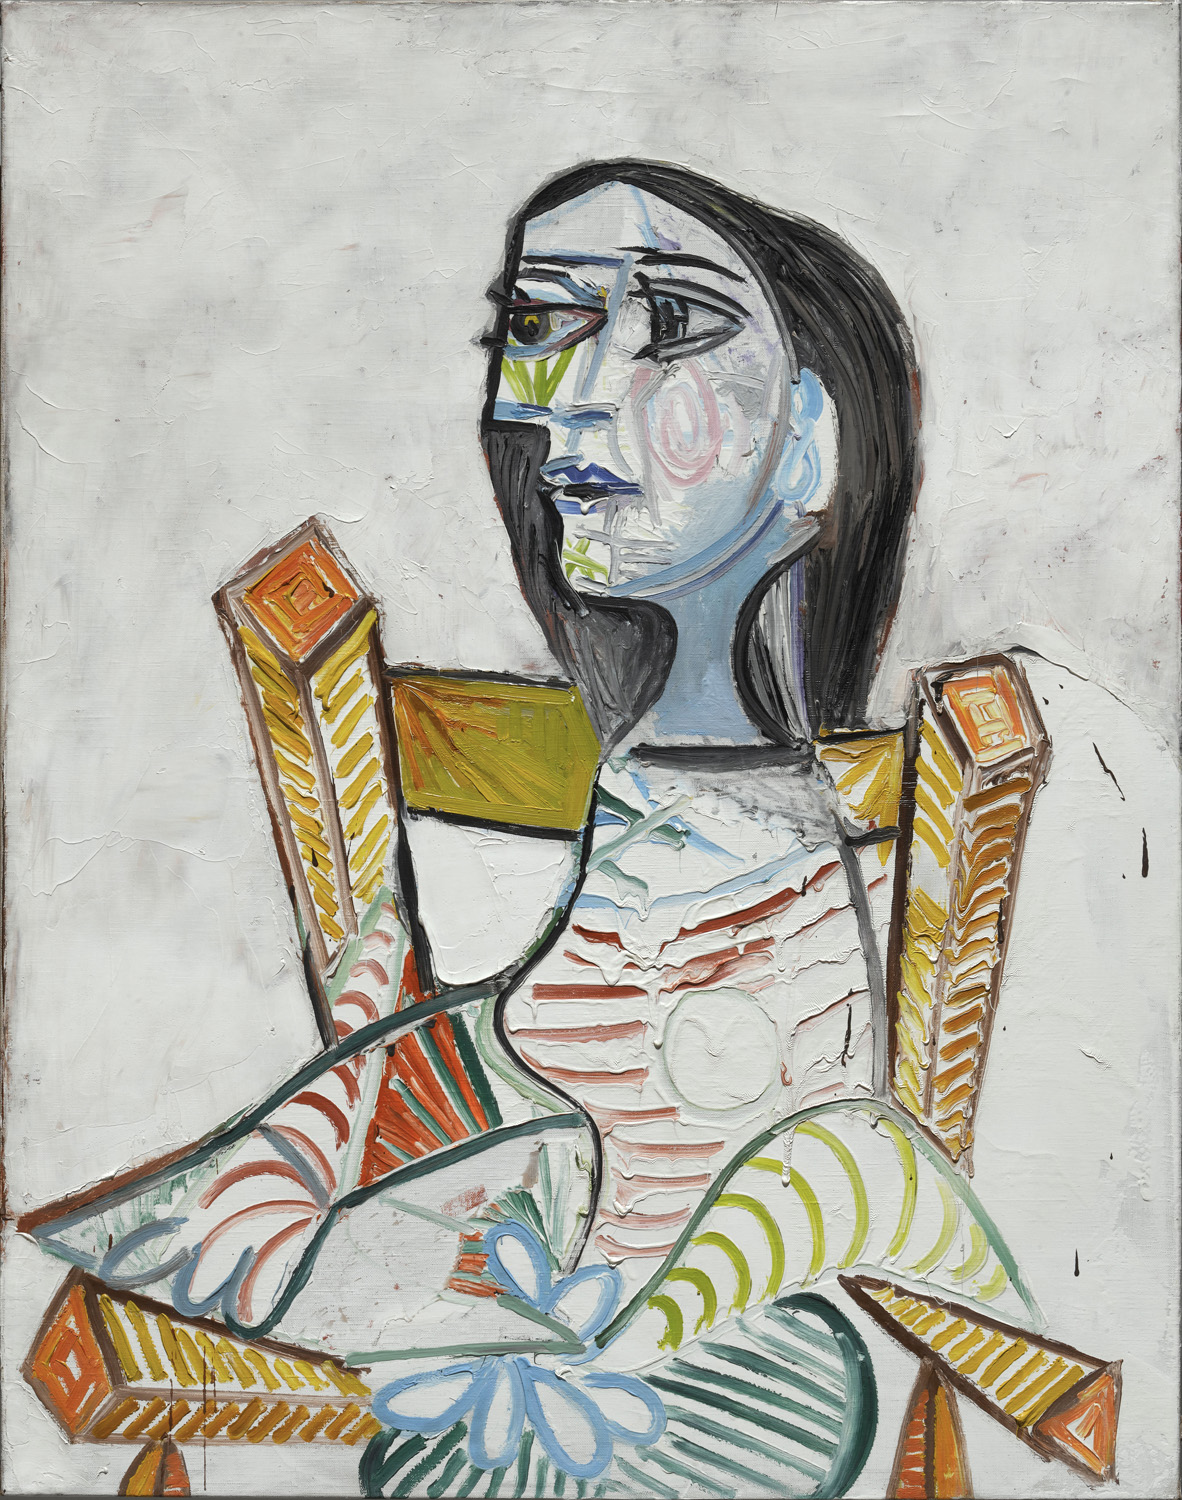 Pablo Picasso, Portrait de femme,1938, Paris, Centre Pompidou – Musée national d’art modern – Centre de creation industrielle © ADAGP, Paris. Photo © Centre Pompidou, MNAM-CCI, Dist. RMN-Grand Palais / Georges Meguerditchian